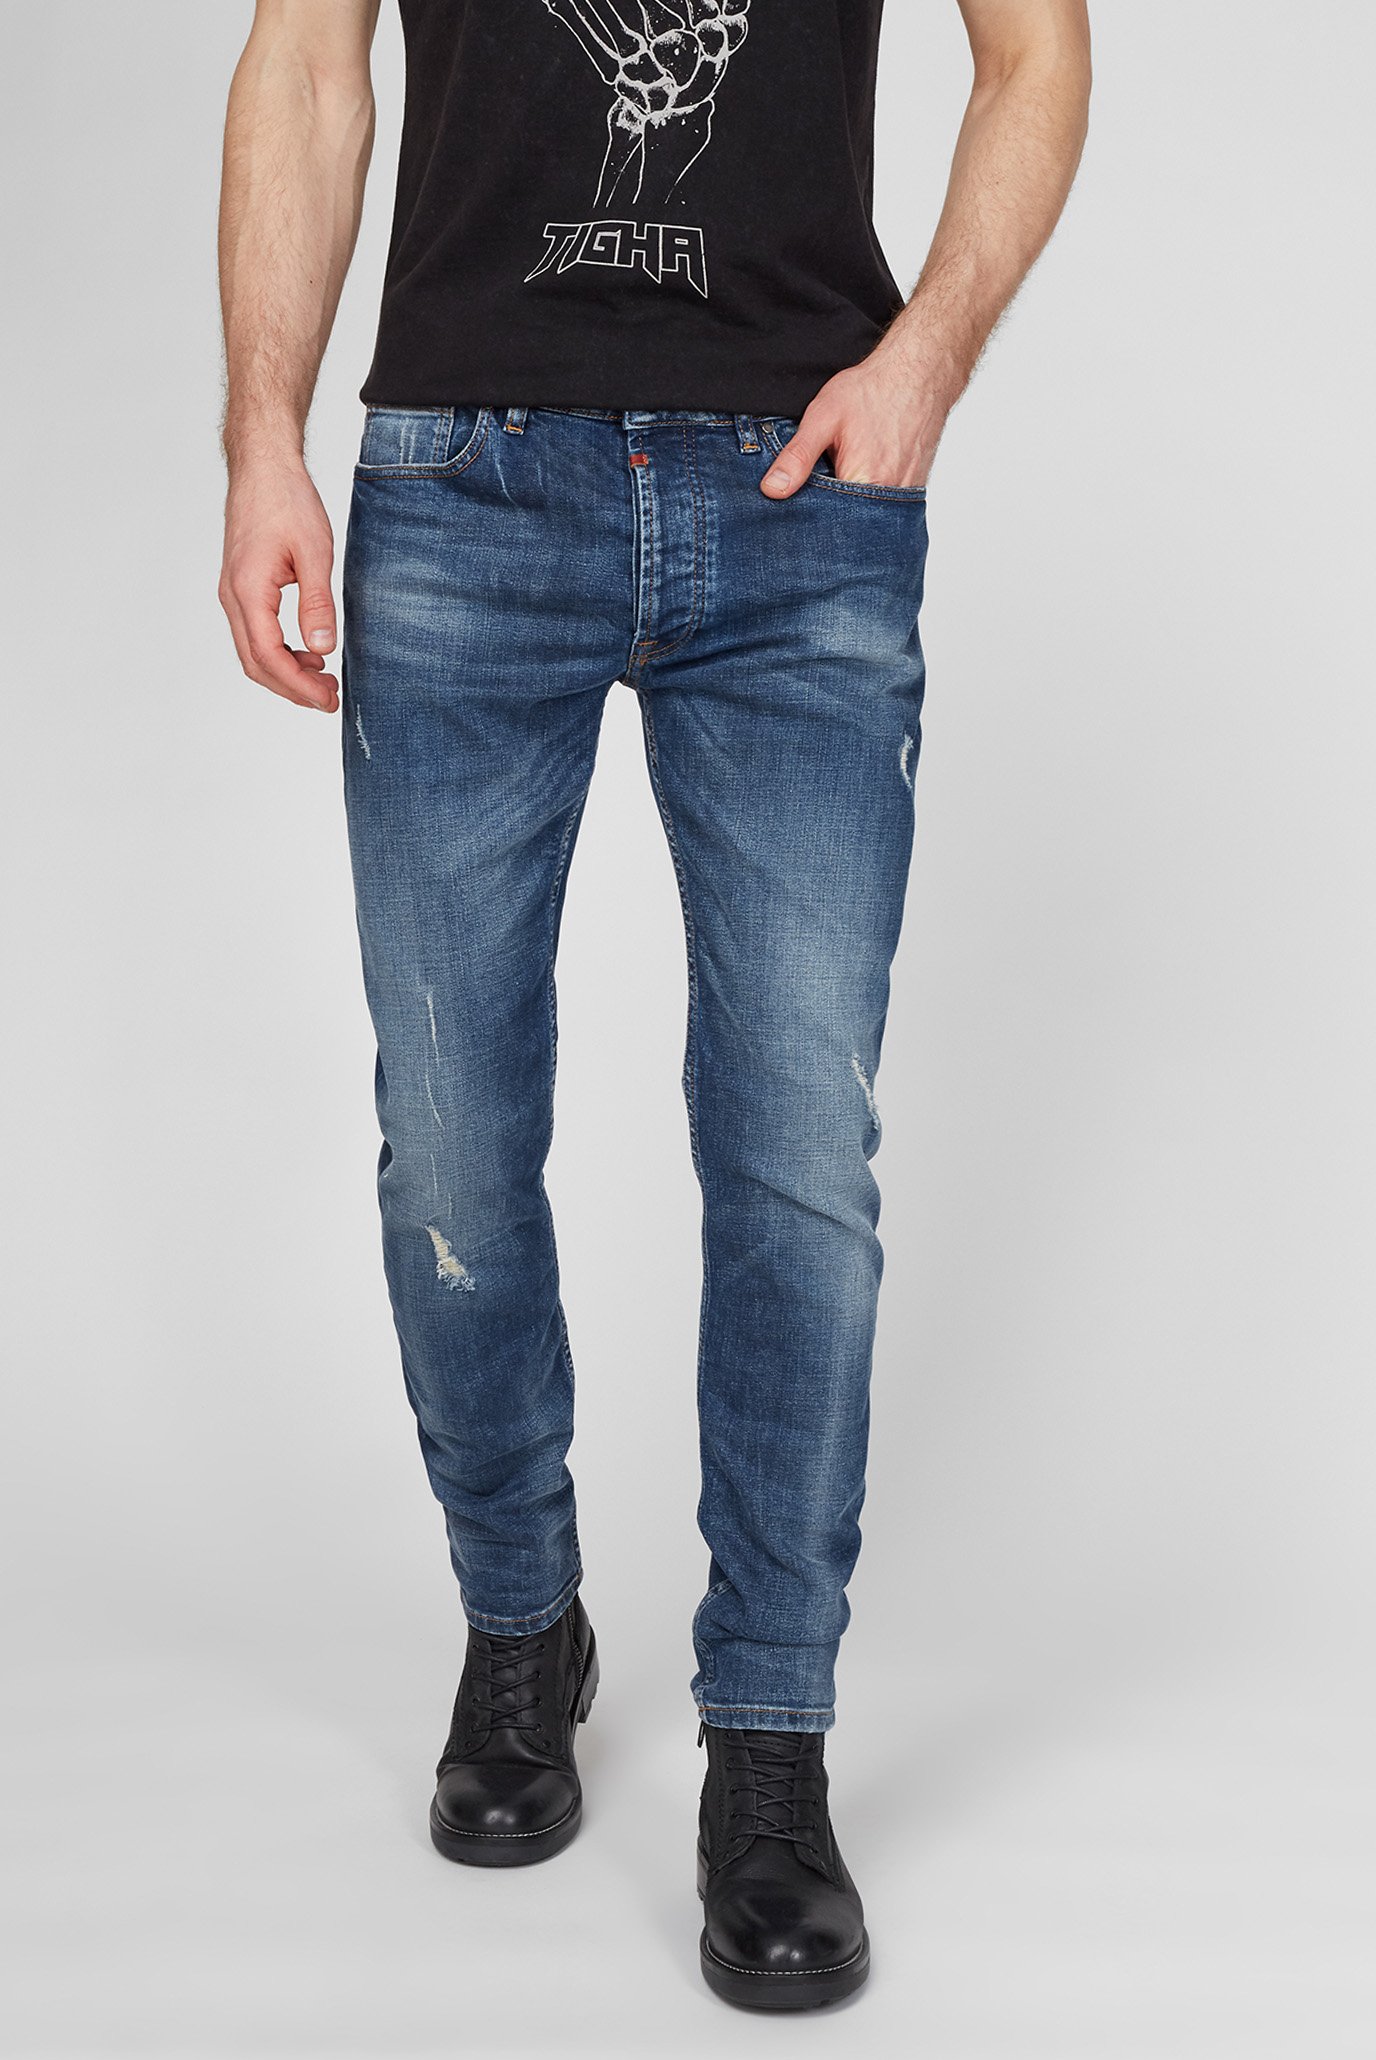 Мужские синие джинсы Morten 9994 Repaired 1